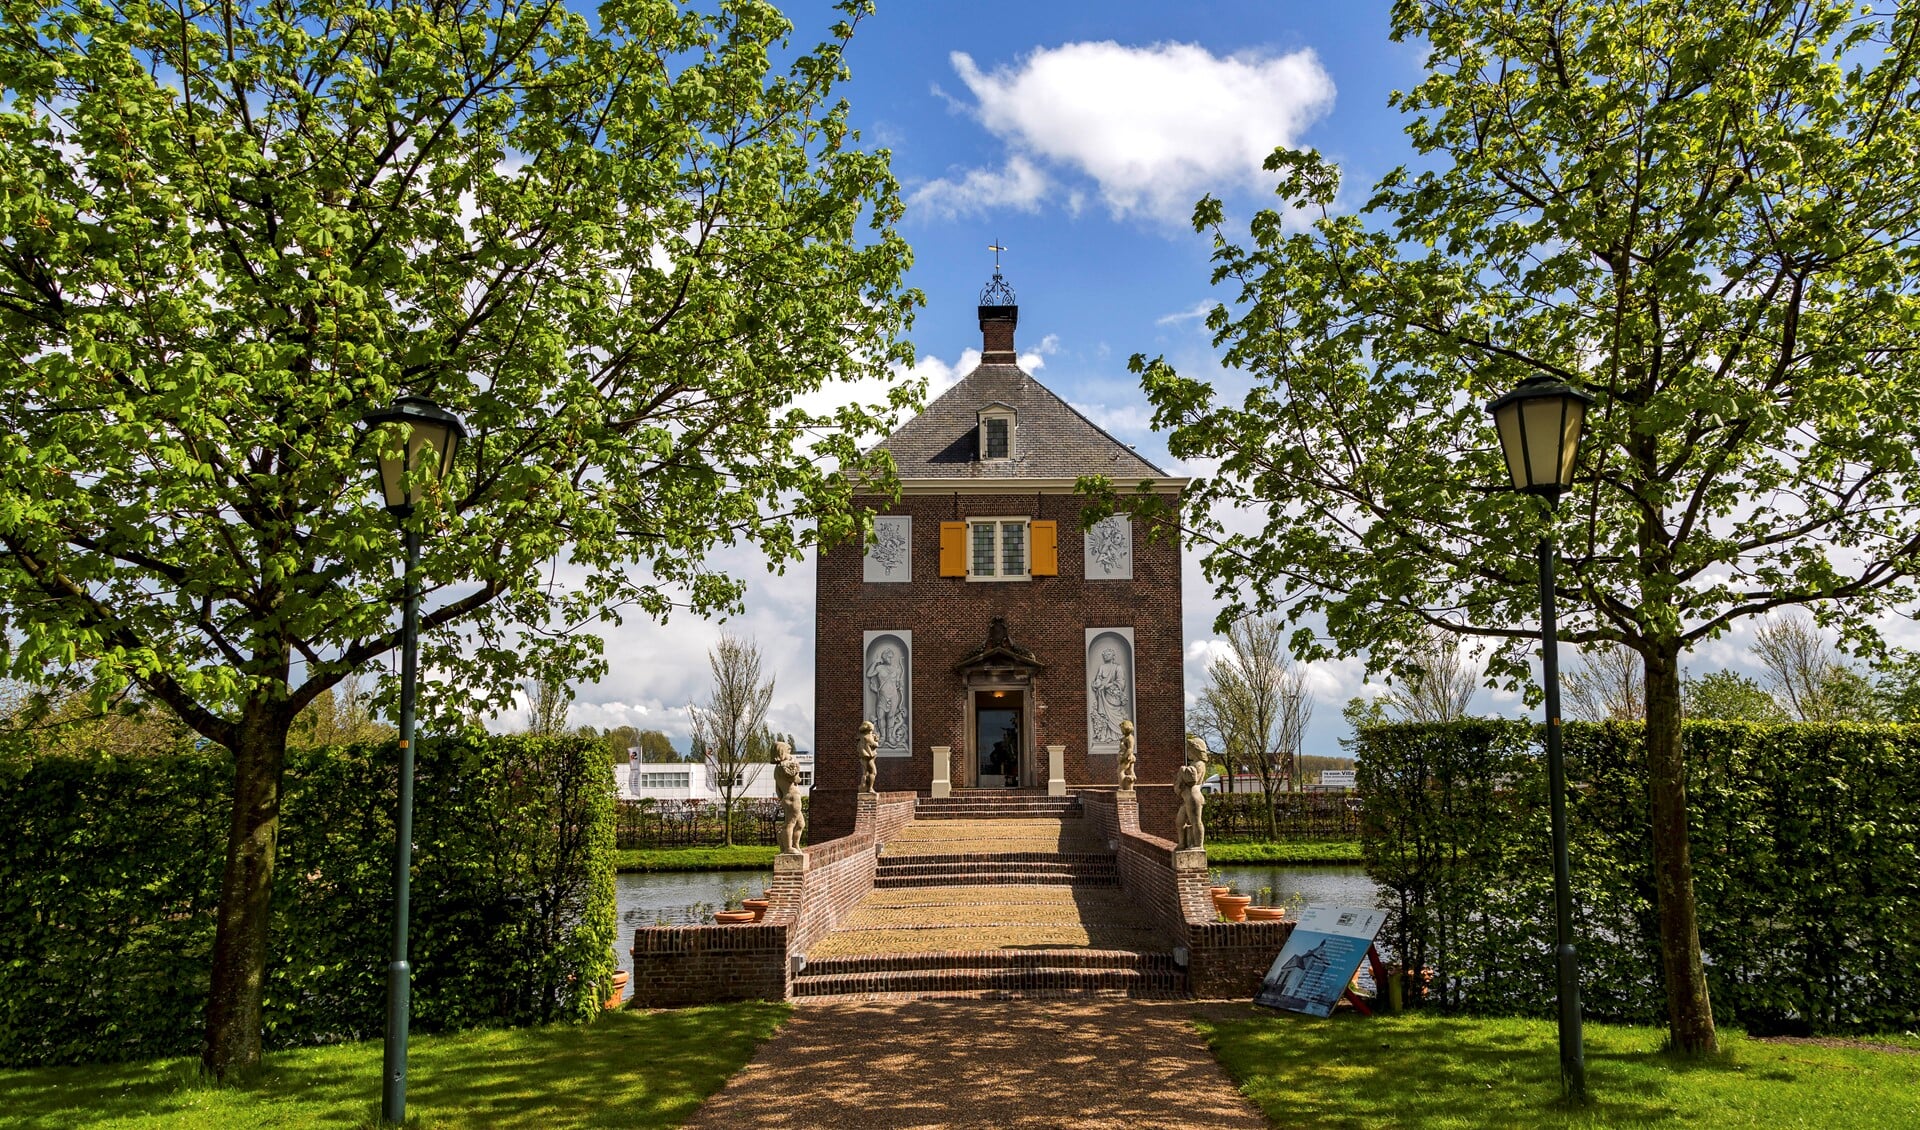 Buitenplaats Huygens' Hofwijck in Voorburg. (Foto: Charles Groenenveld)